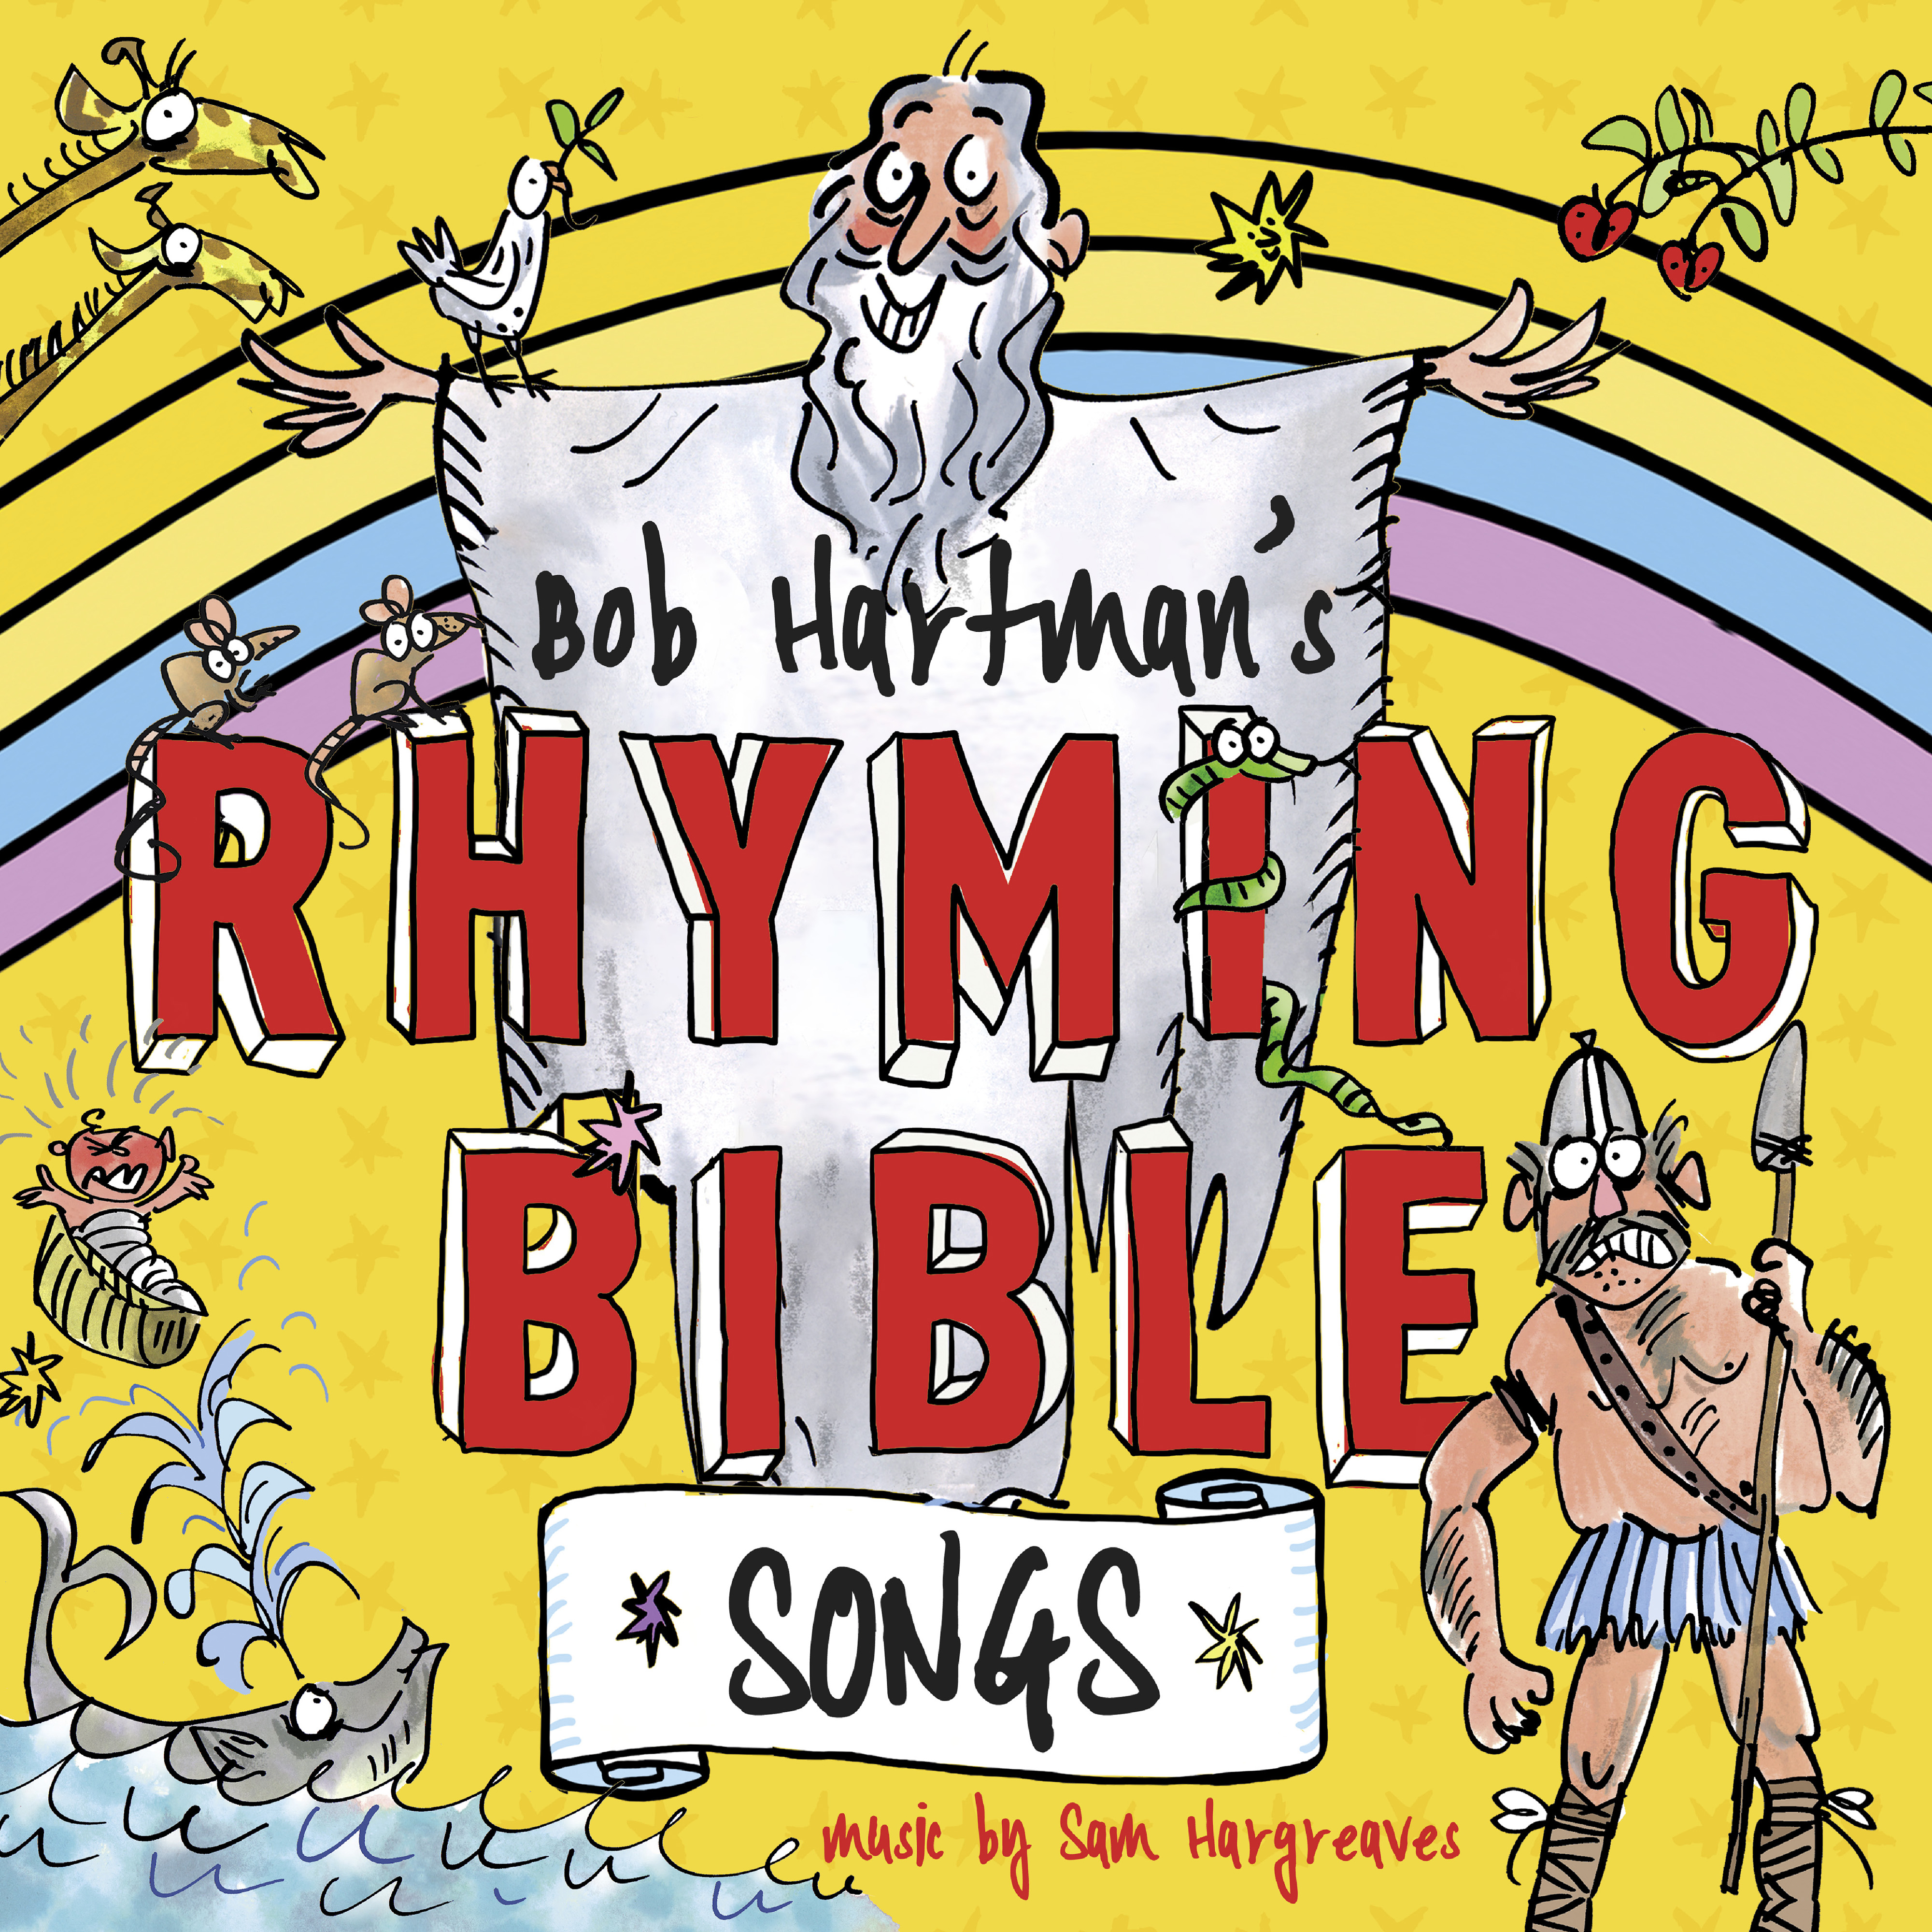 Bob Hartman's Rhyming Bible Songs